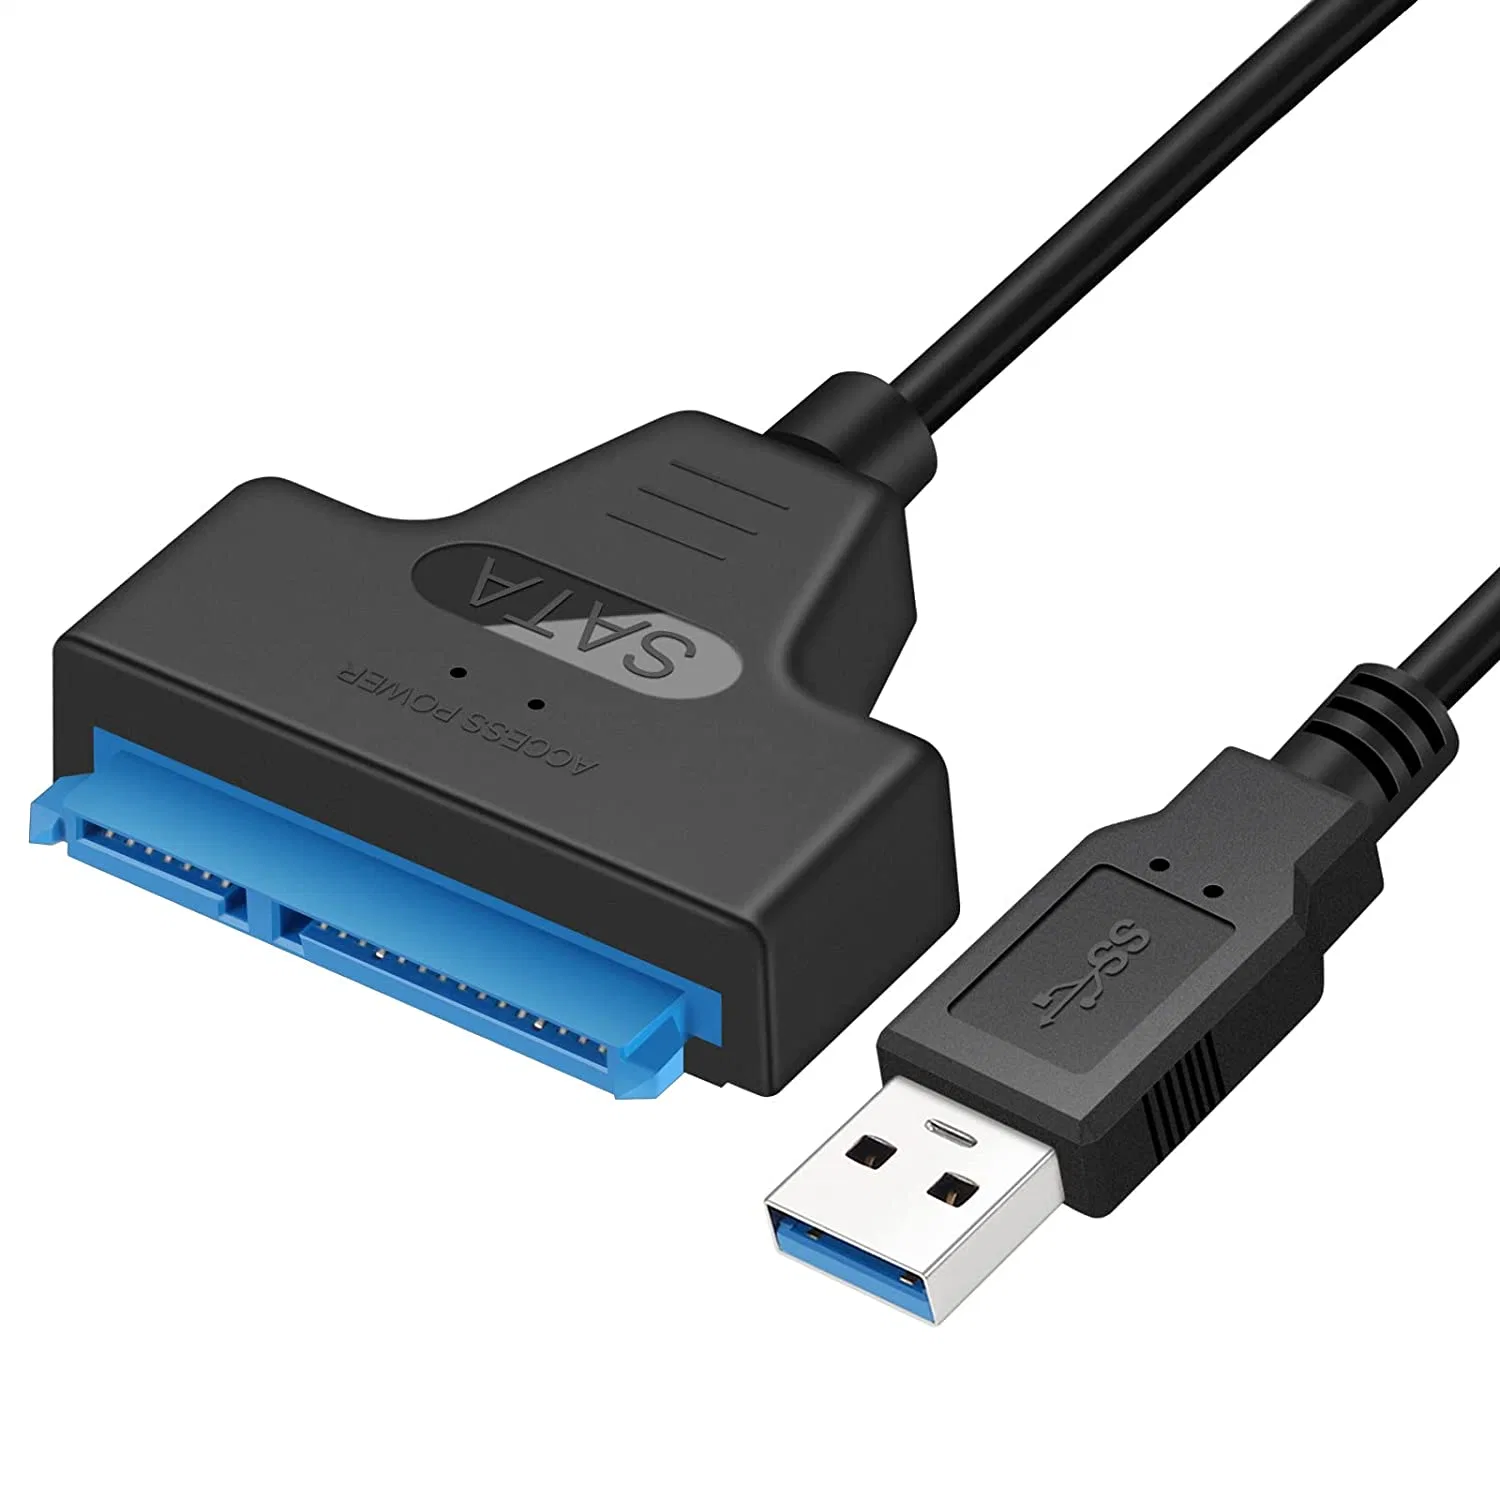 A SATA Cabo Adaptador USB 3.0 para 2.5 polegadas HDD/SSD de disco rígido